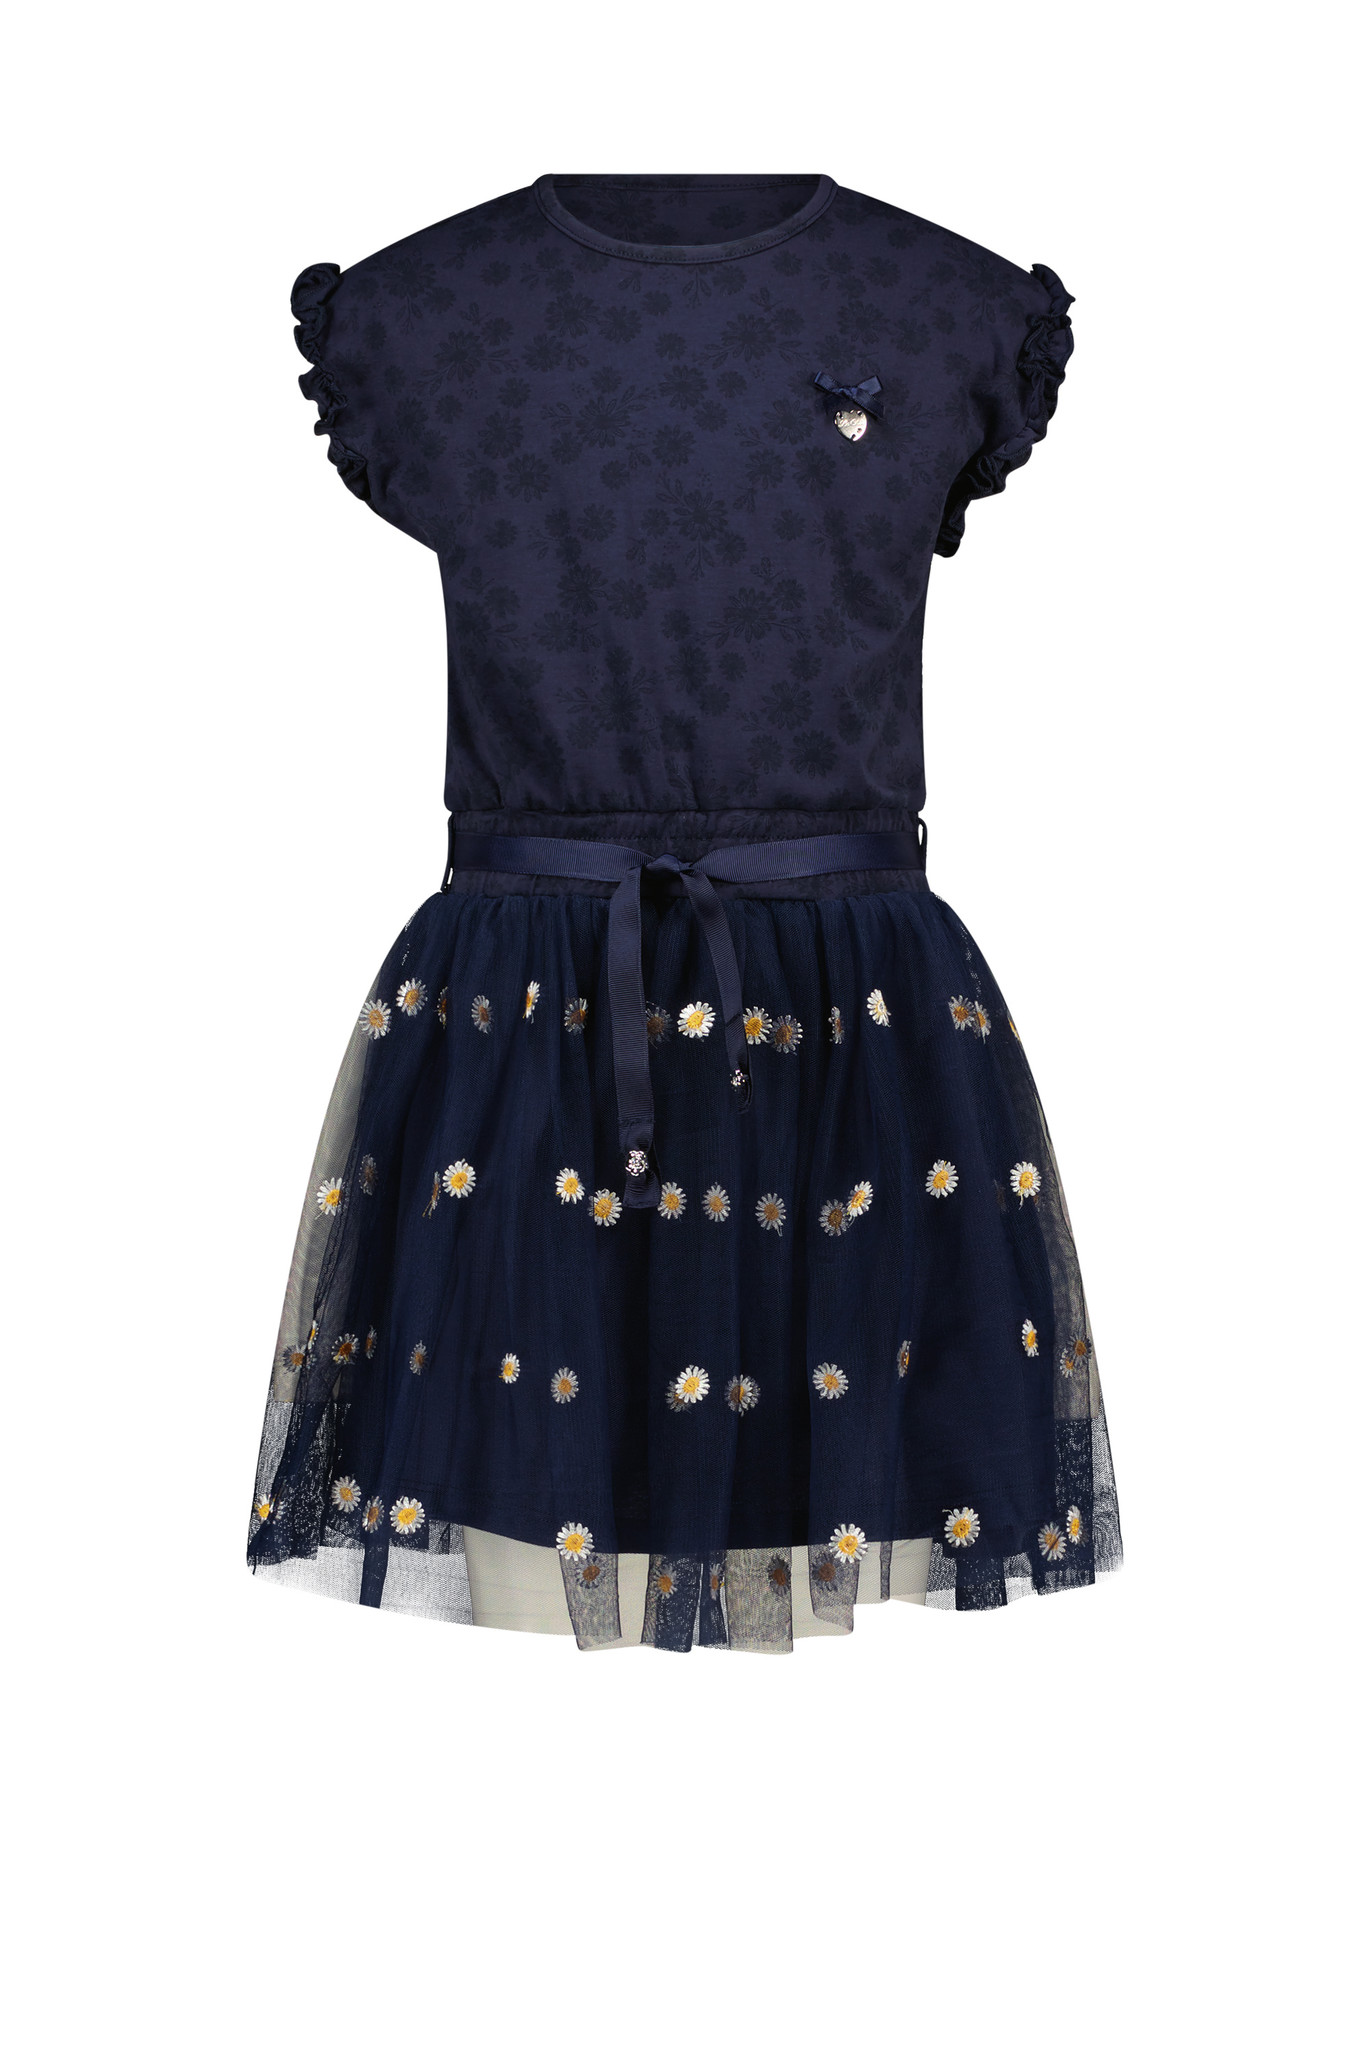 Le Chic Meisjes jurk - Squid - Navy blauw